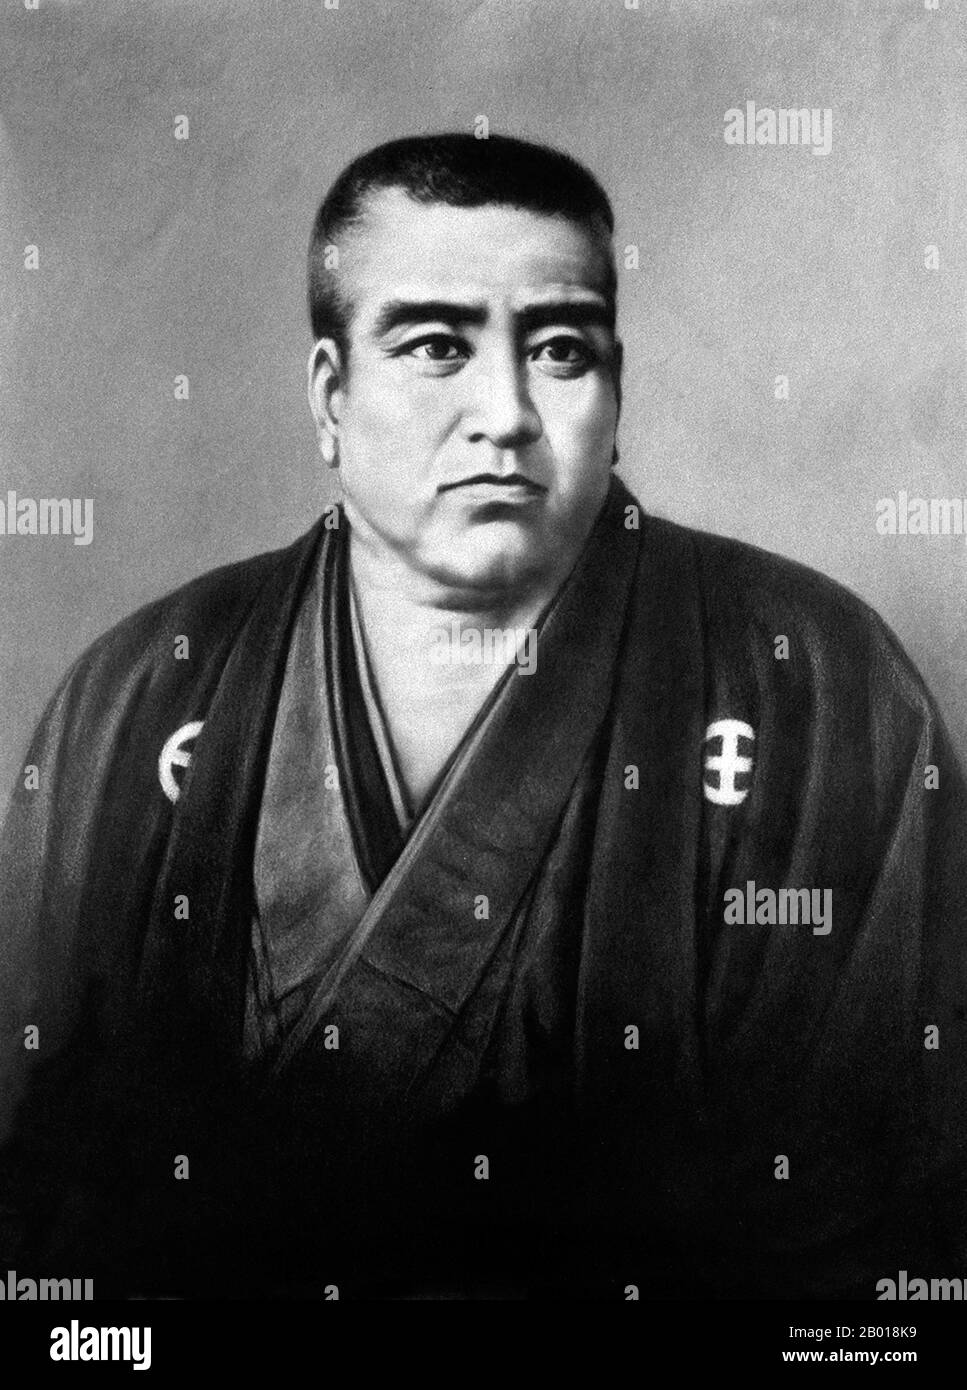 Japan: Saigō Takamori (23. Januar 1828 - 24. September 1877), Samurai und Adliger aus der späten Edo-Zeit und der frühen Meiji-Ära. Er wurde als der letzte wahre Samurai bezeichnet. Porträt von C. Nakagawa, c. 1870s. Saigō Takamori, geboren in Saigo Kokichi und literarischer Name Saigo Nanshu, war einer der einflussreichsten Samurai der japanischen Geschichte. Er lebte während der späten Edo-Zeit und frühen Meiji-Ära und wurde ein Führer der Meiji-Restauration. Später führte er die gescheiterte Satsuma-Rebellion gegen die Meiji-Regierung an und beging während der Schlacht von Shiroyama Seppuku. Er wurde ein nationales Symbol und Held. Stockfoto